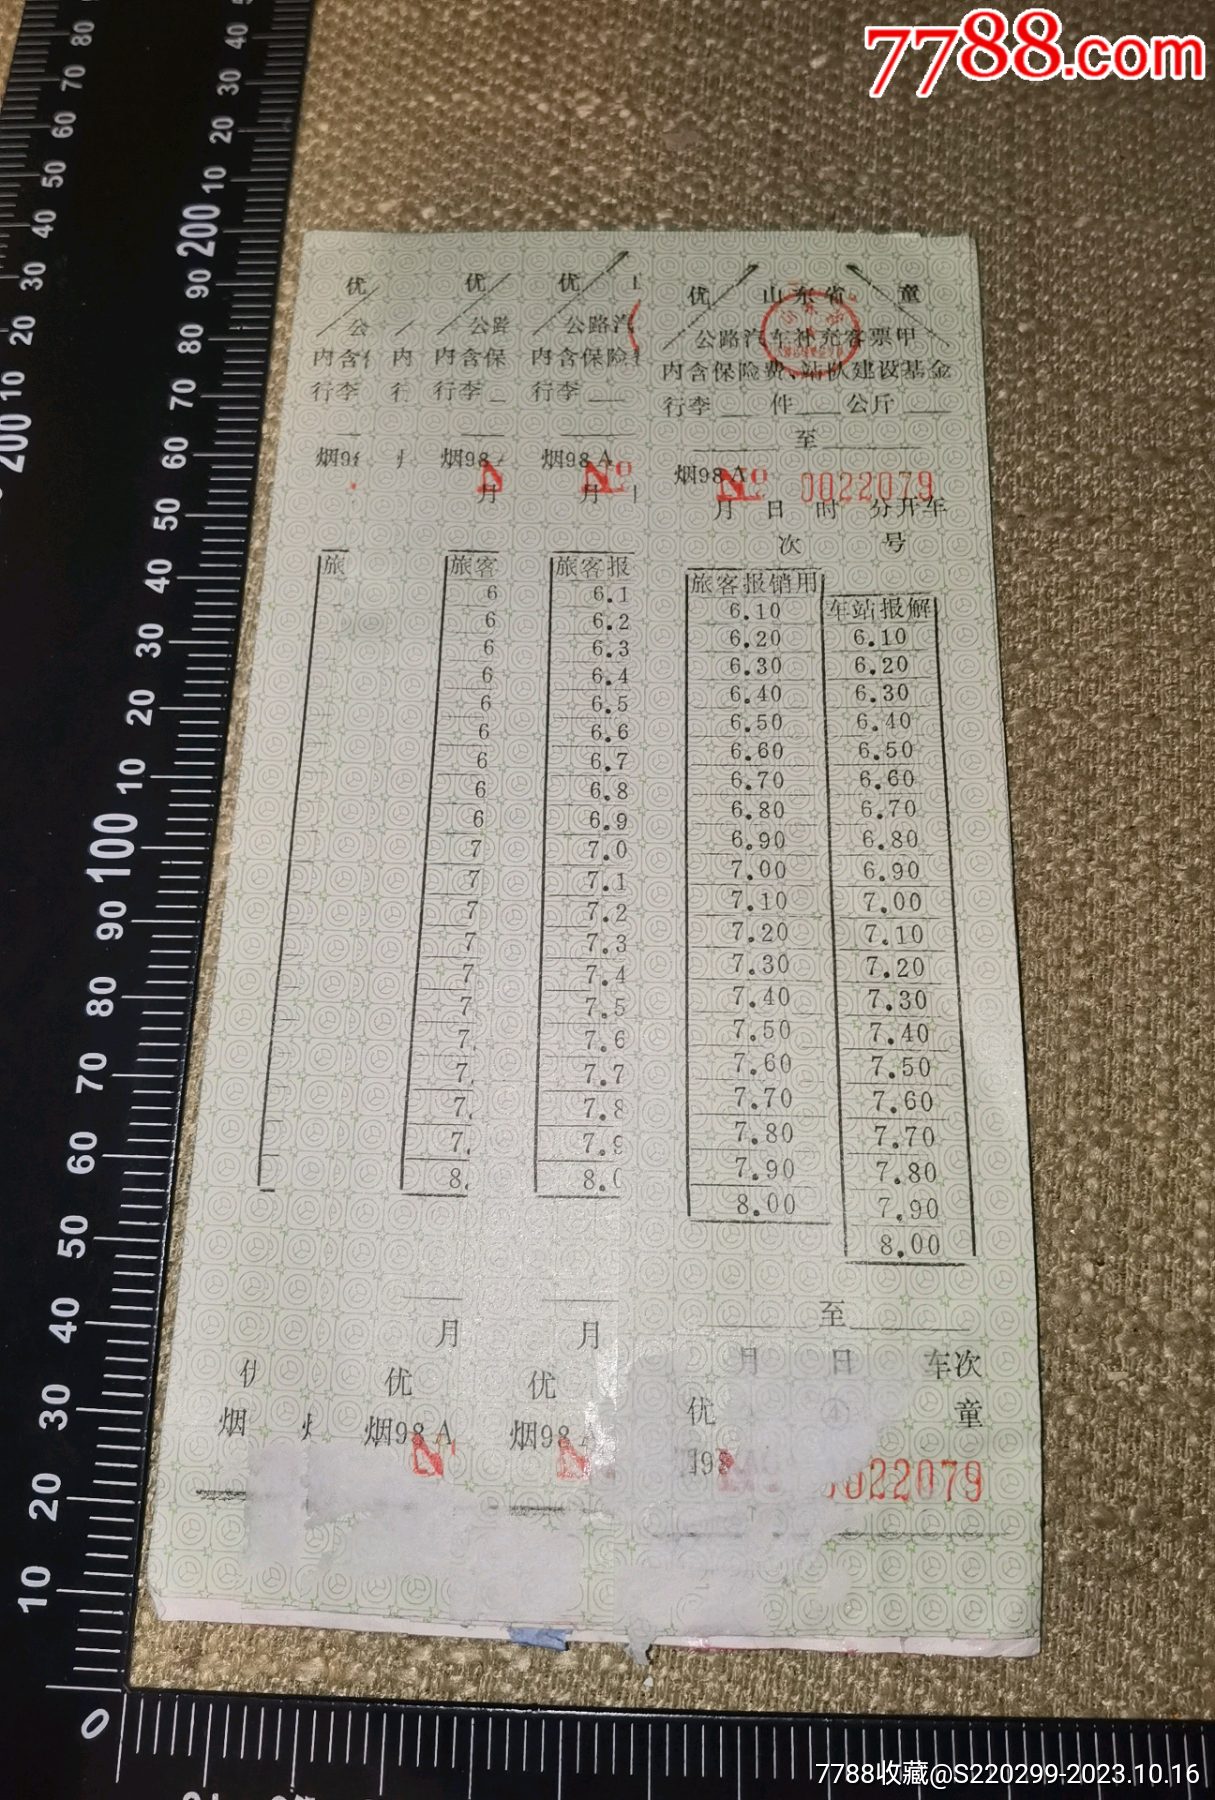 1998年山东省公路汽车补充客票甲一叠贴着的23枚票上没有笔迹等实图自